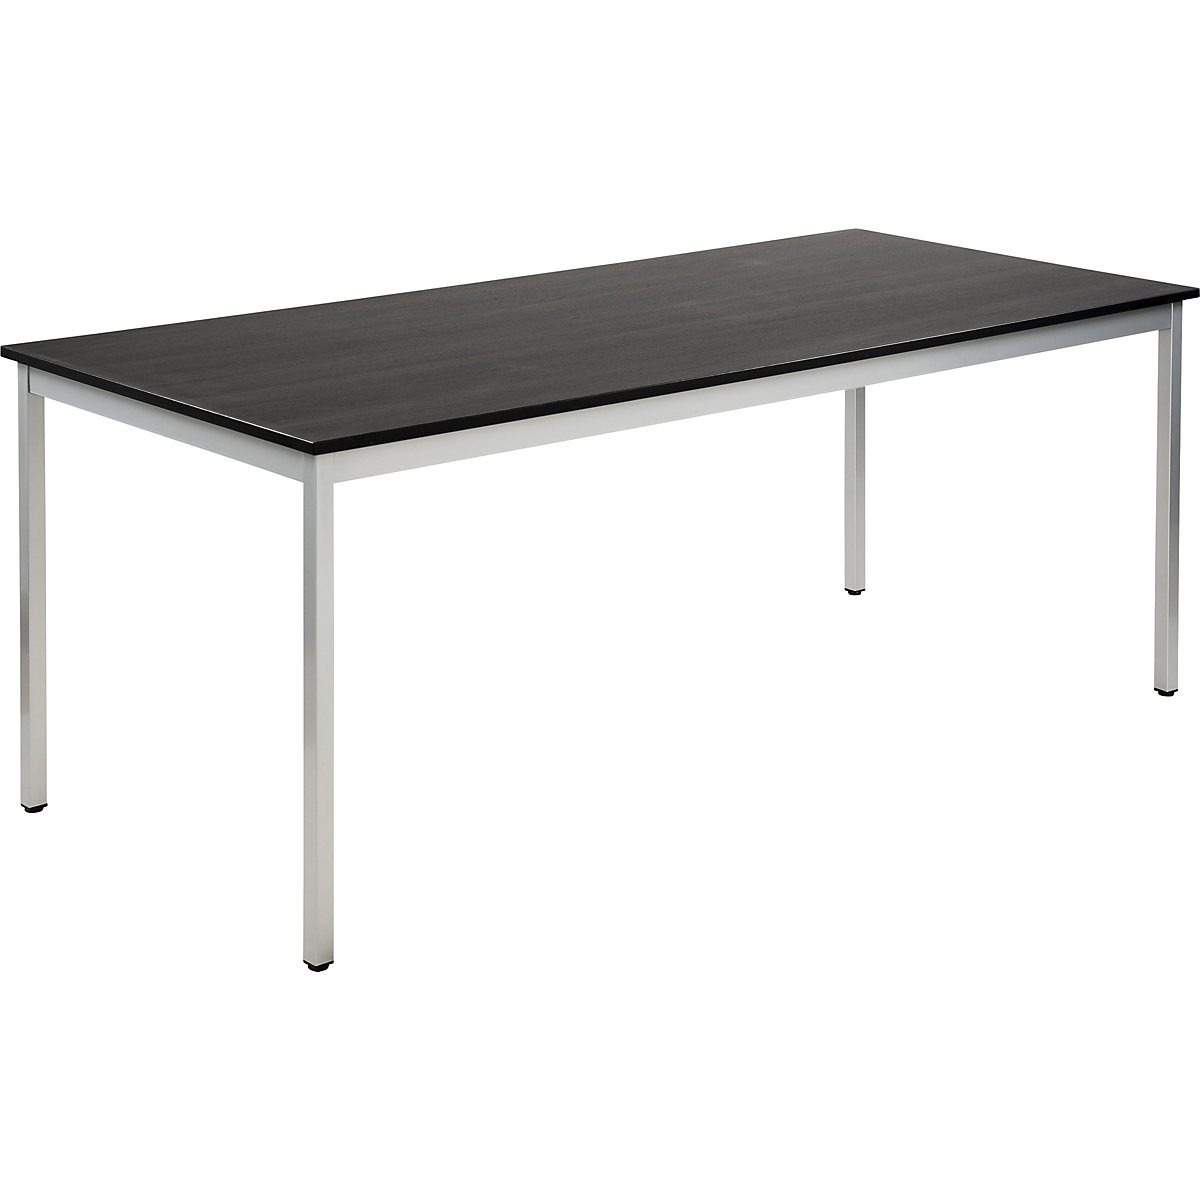 Večnamenska miza – eurokraft basic, pravokotne oblike, VxŠxG 740 x 1800 x 800 mm, plošča v imitaciji jesena temno sive barve, ogrodje aluminijasto bele barve-14